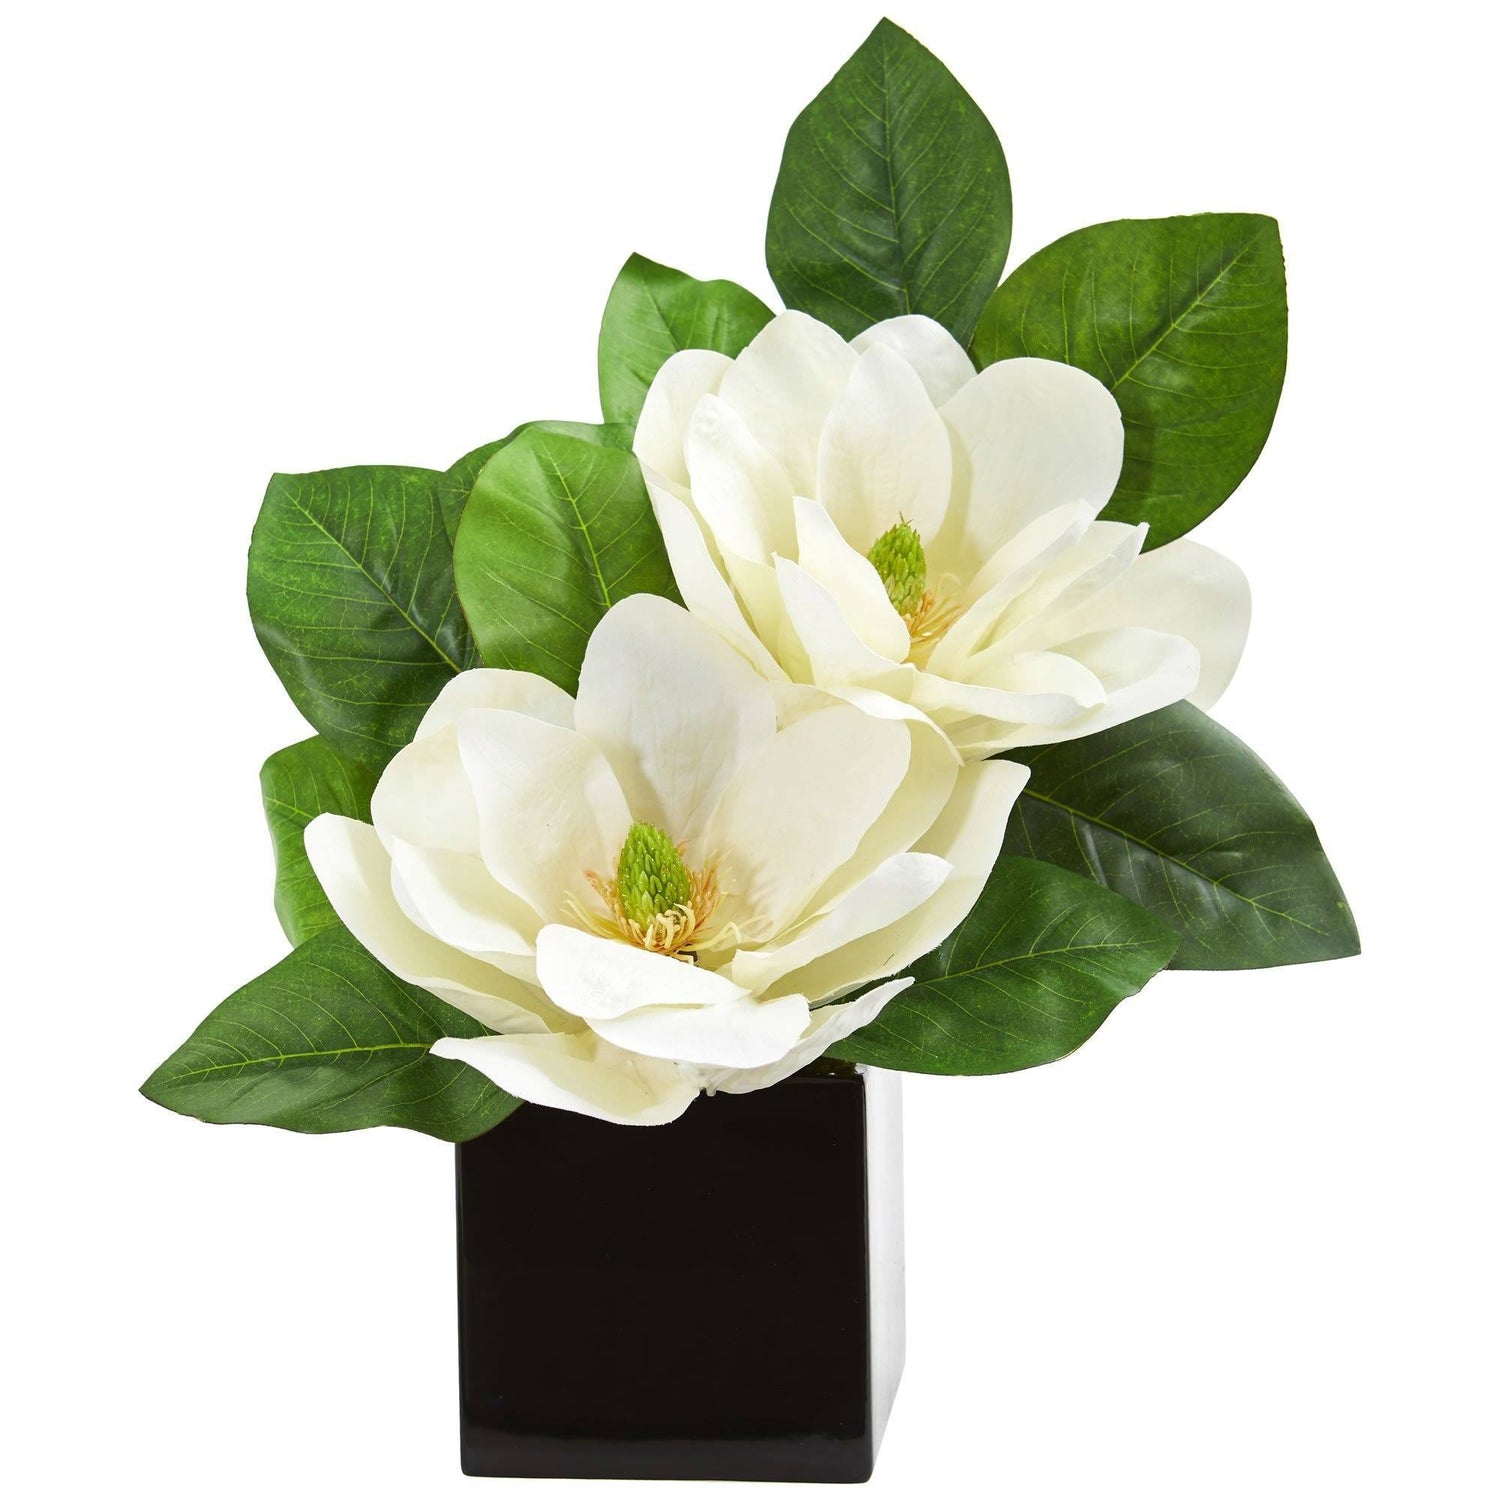 17" Magnolia Artificial Arrangement in Black Vase"